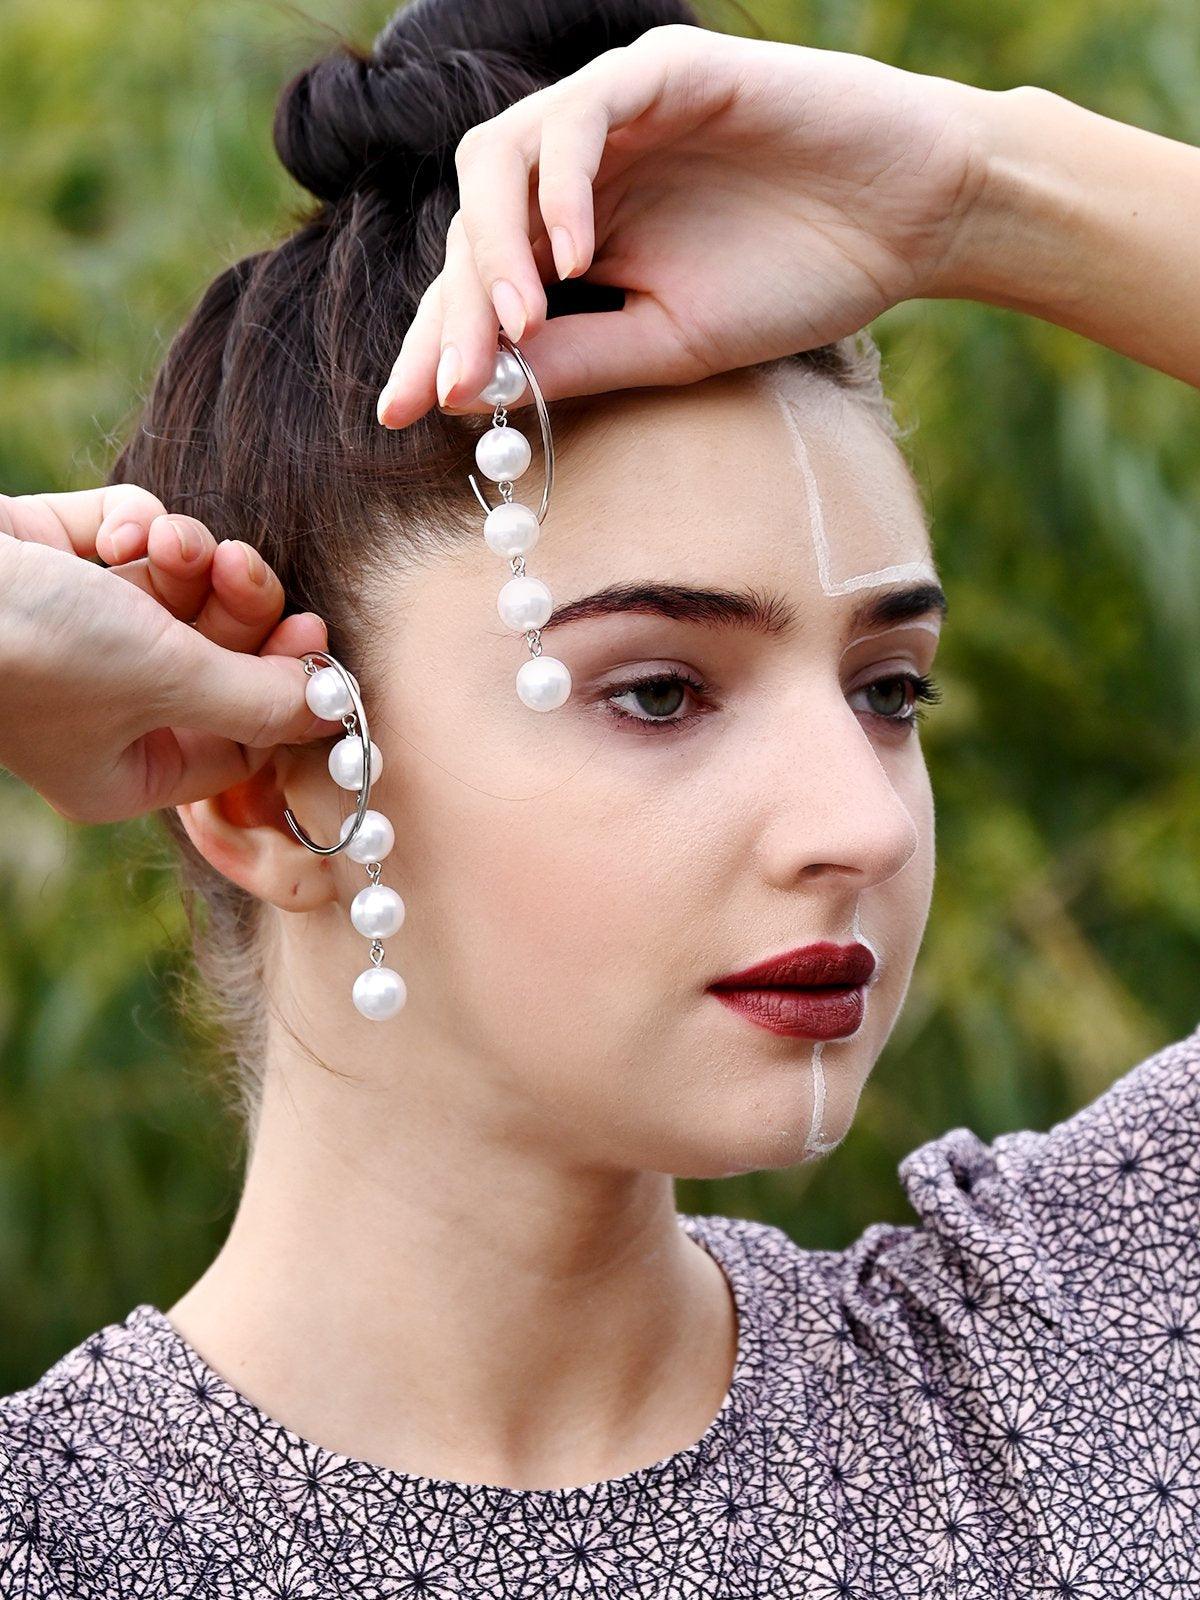 Women's Silver Hoop Earrings With Pearls - Odette